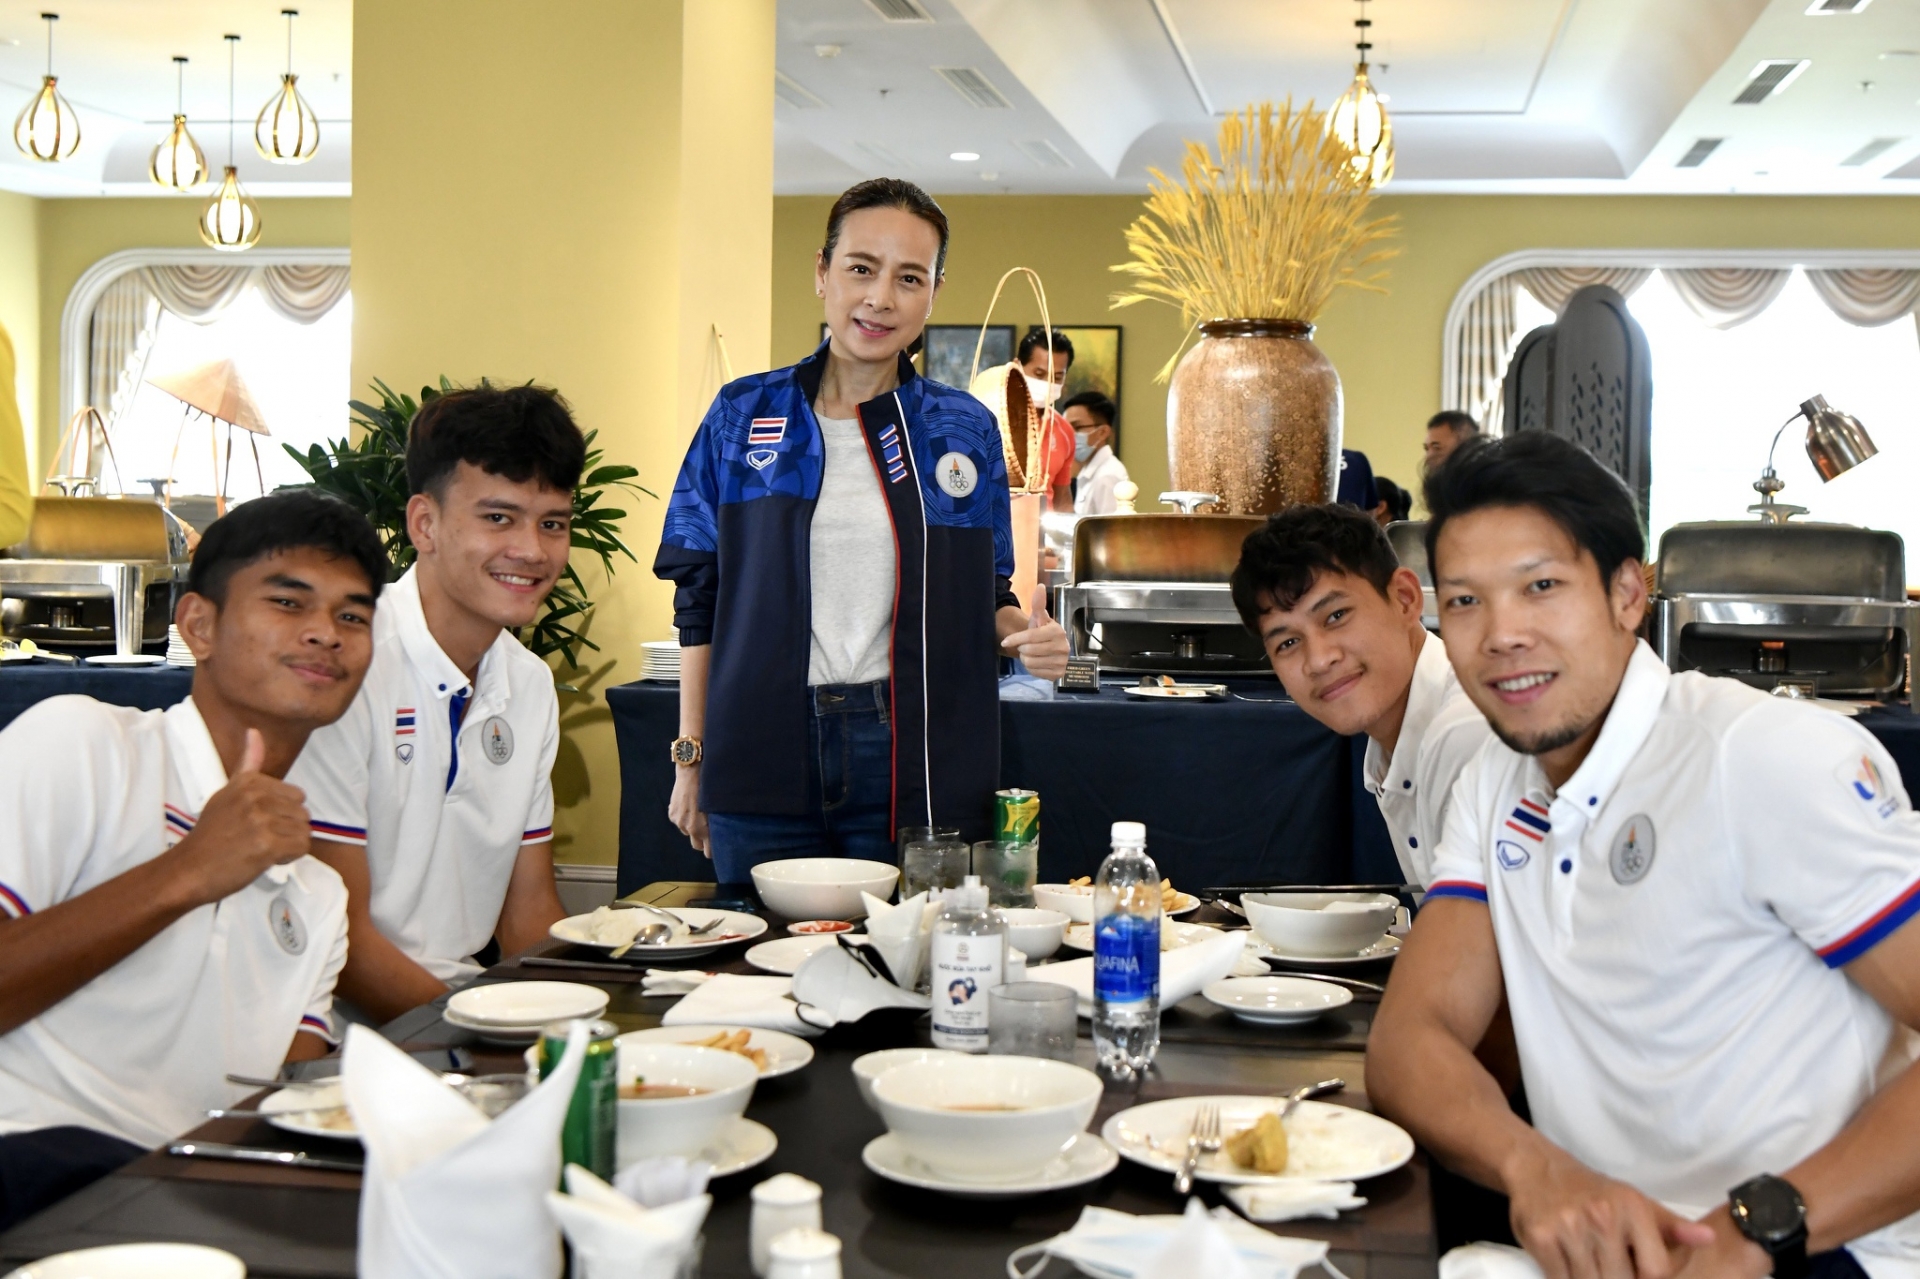 Trưởng đoàn Nualphan Lamsam khen đồ ăn Nam Định, U23 Thái Lan được nhận 'quà quê' 1